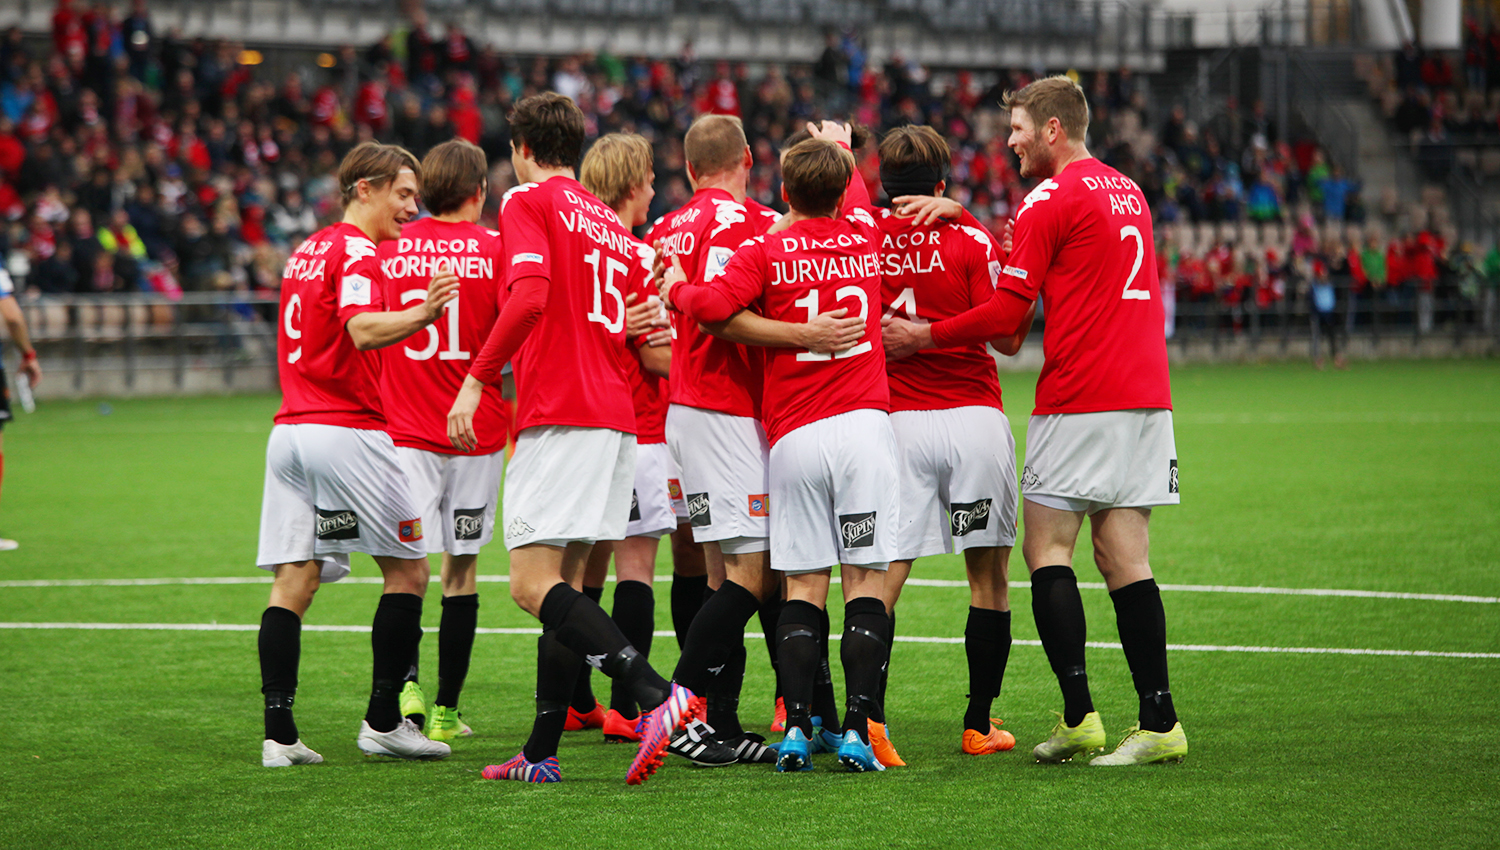 IFK:n historiallinen liigakausi päättyi kotivoittoon – kiitos kannattajille kaudesta 2015!